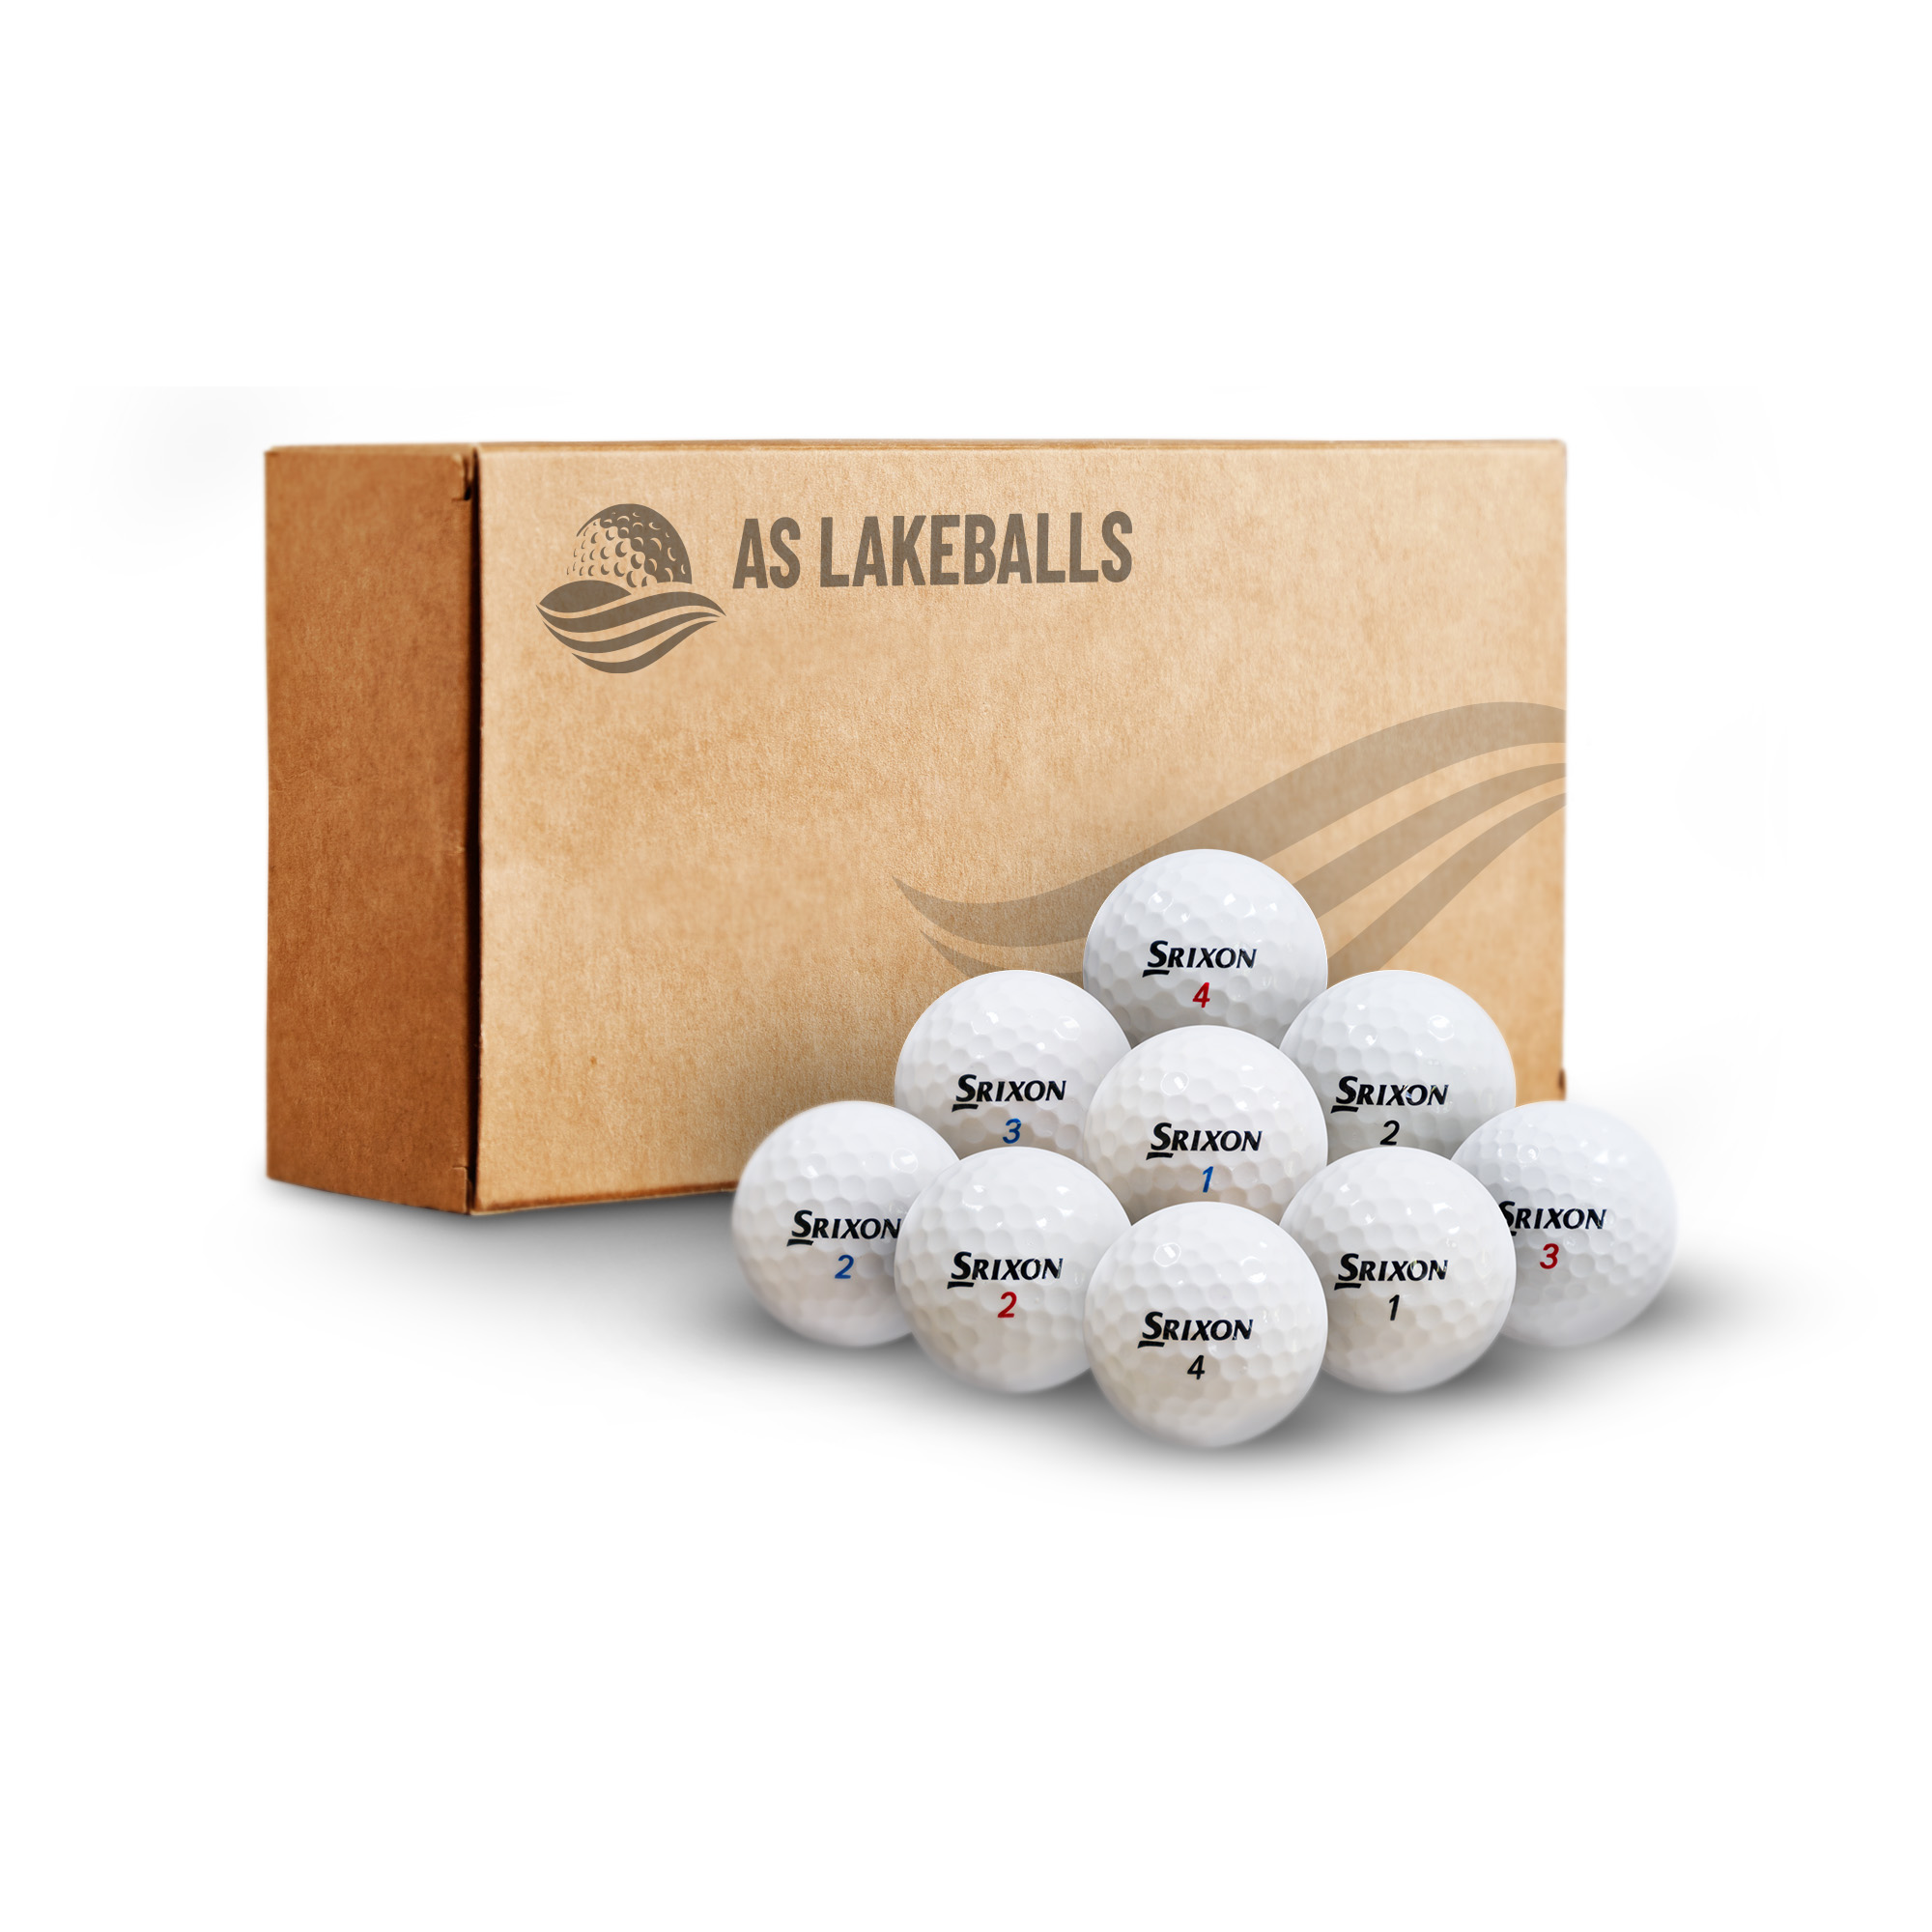 100 Srixon Mix AA-AAA bei AS Lakeballs günstig kaufen